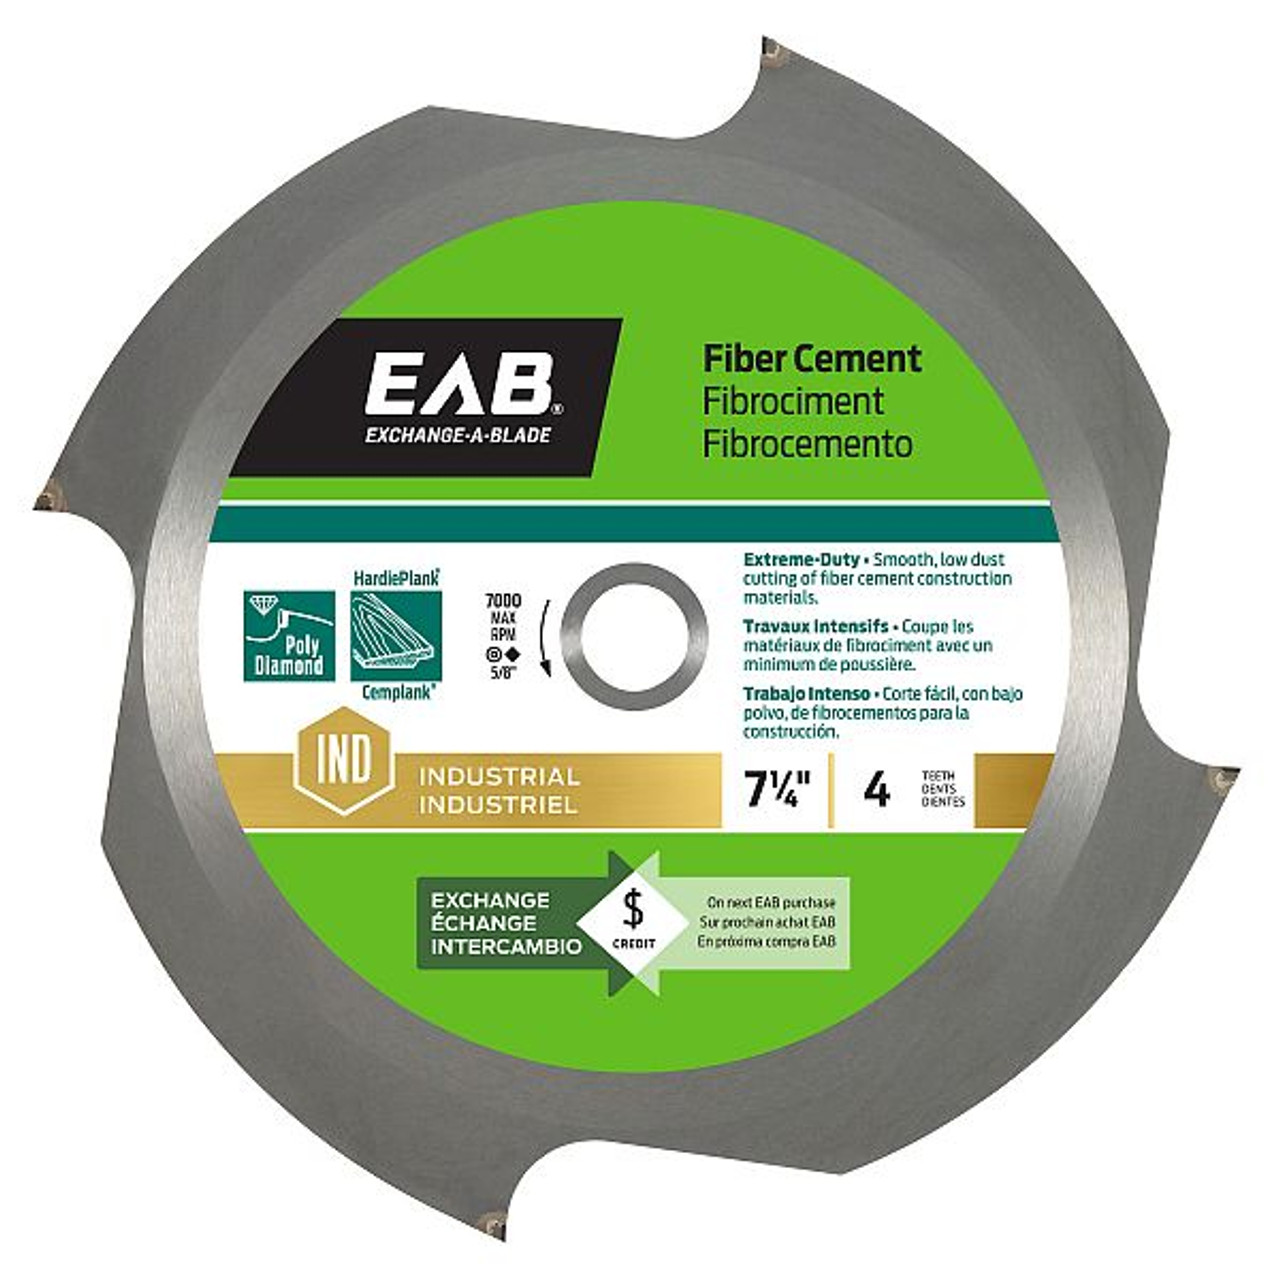 EAB 7 1/4" x 4 Teeth Fiber Cement Industrial Saw Blade Recyclable - 1017402, Bulk